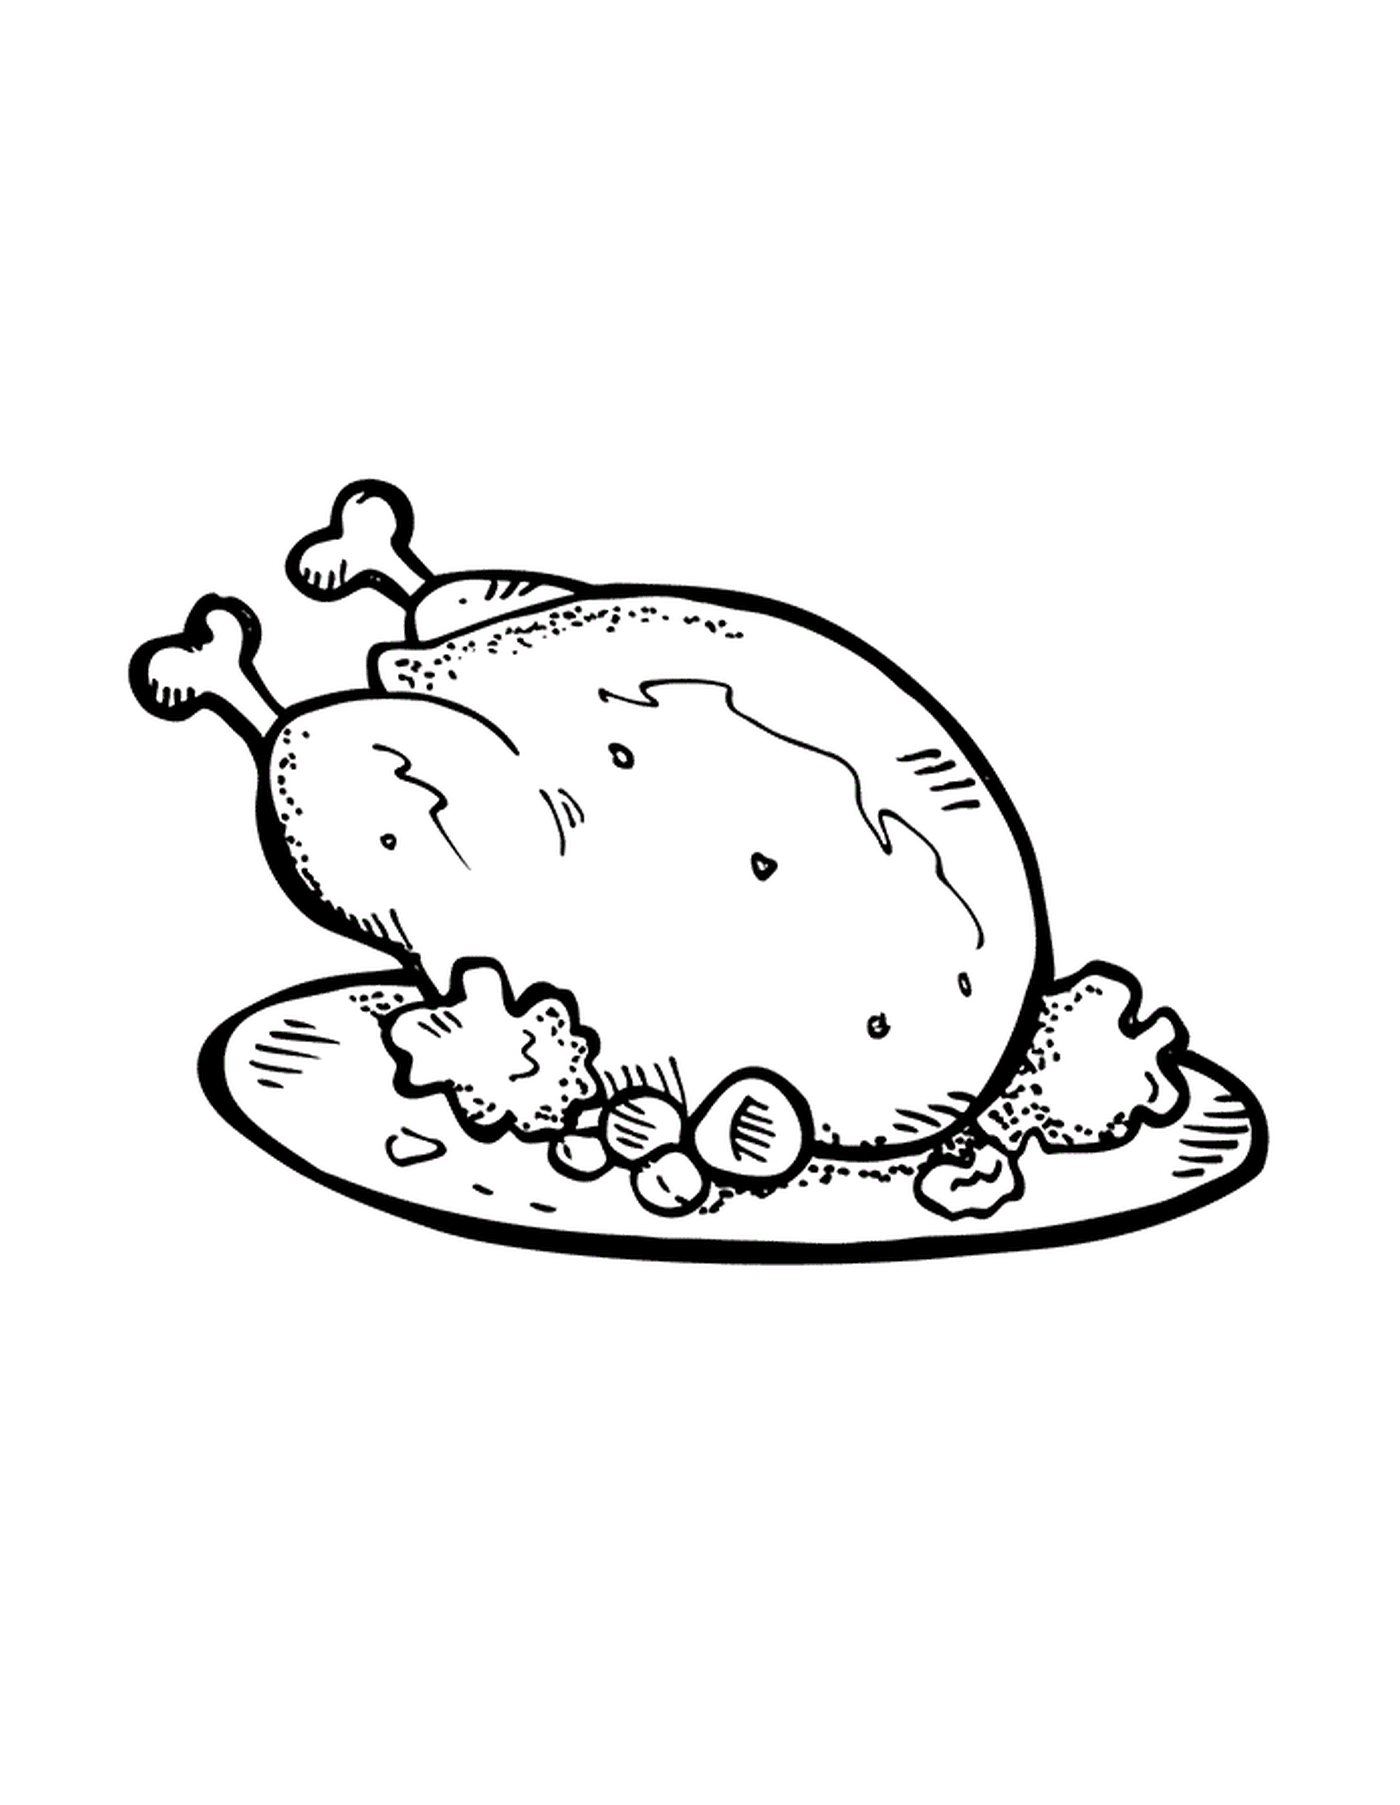  Uma galinha em um prato 